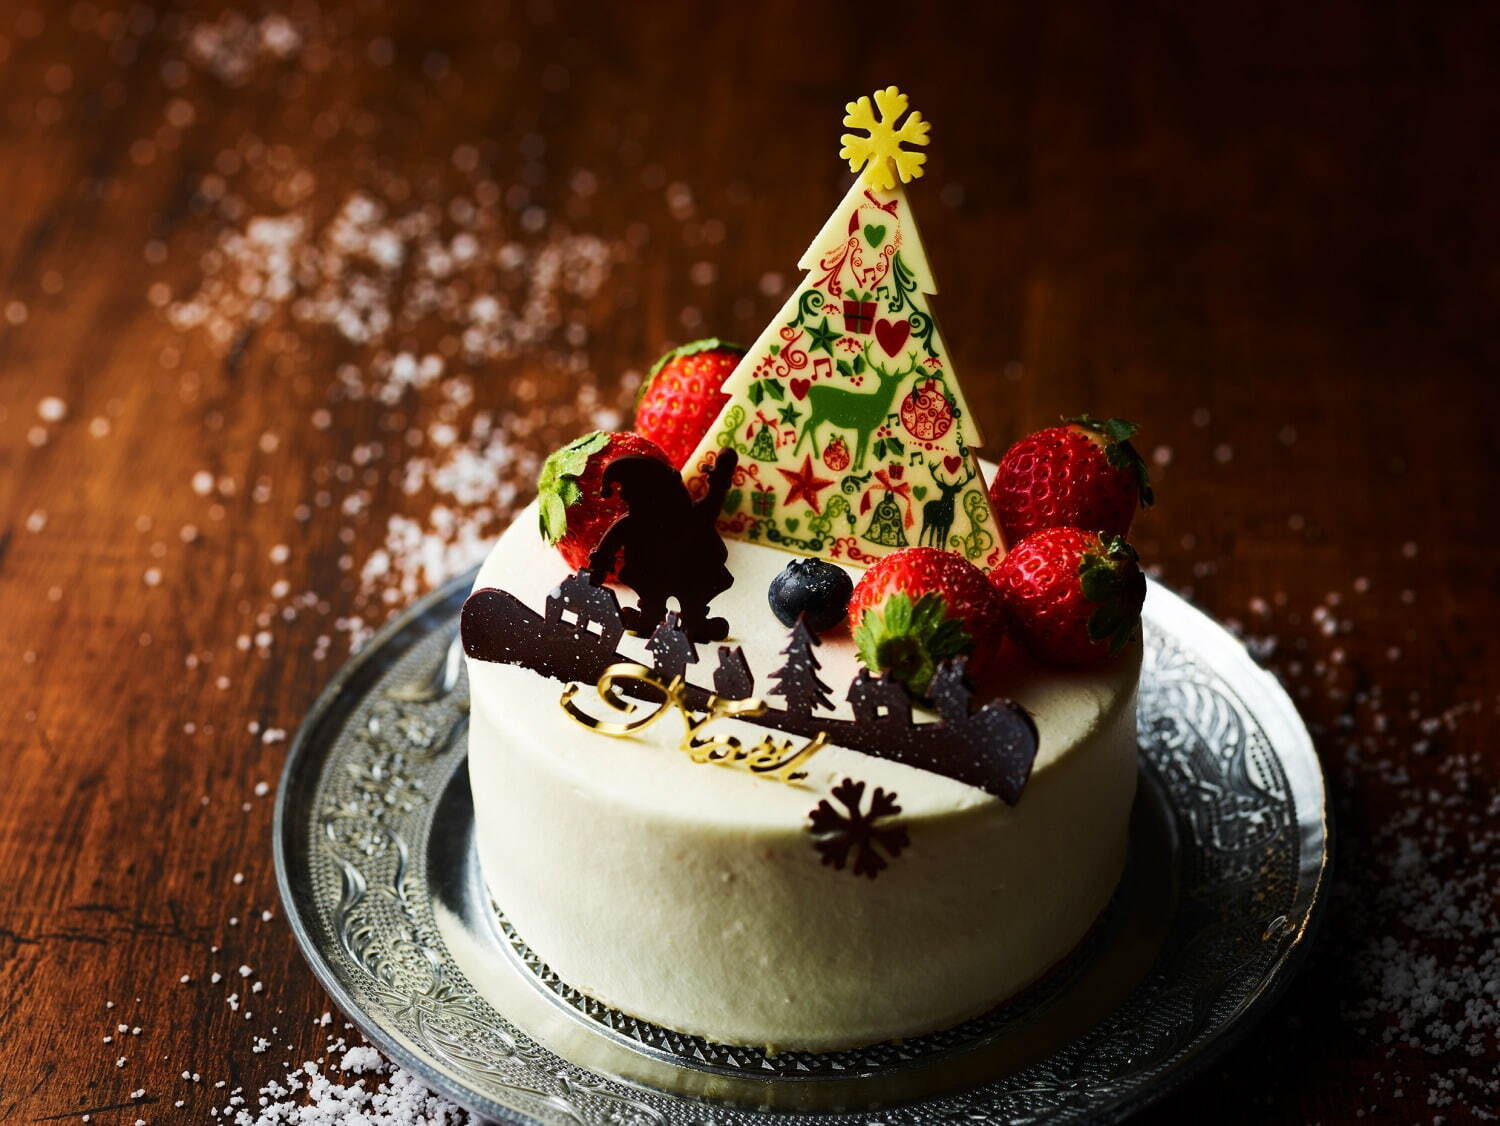 ポアール21年クリスマスケーキ サンタ トナカイチョコで デコレーション 体験できる限定ケーキ ファッションプレス